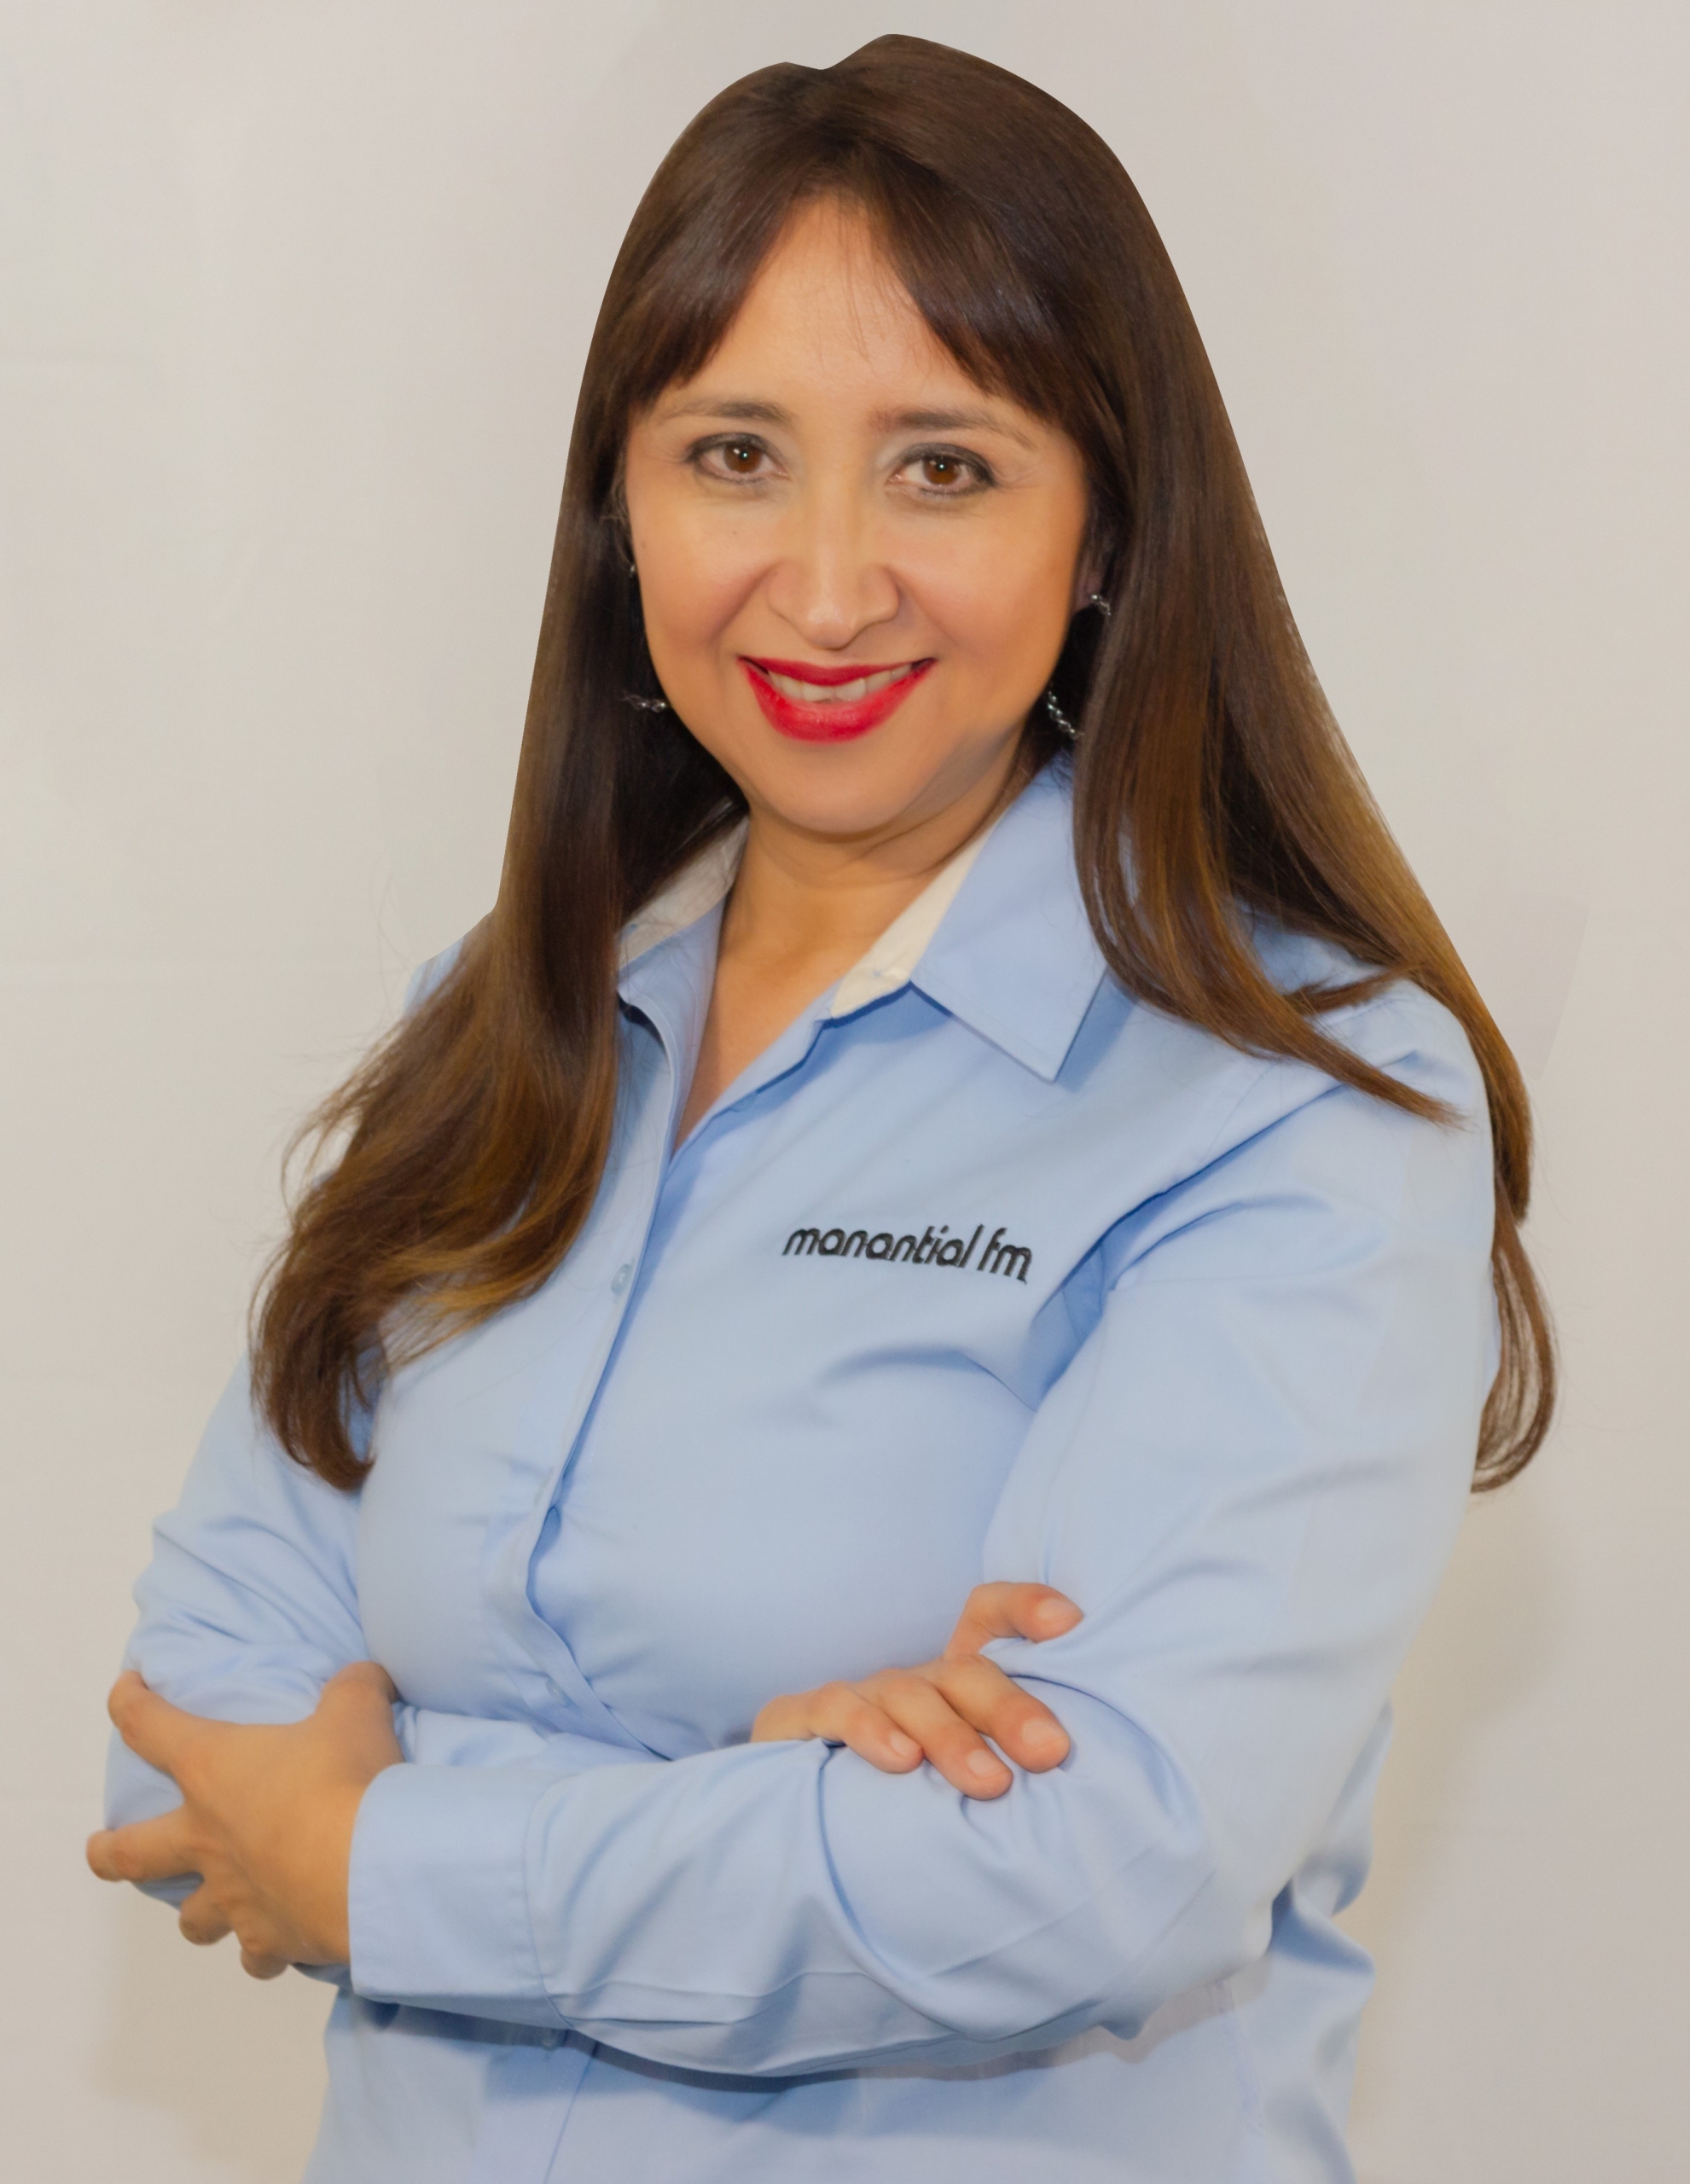 Araceli Calleros, 91.9 KVER Manantial FM Program Director, Promoted to  Station Manager - CMB